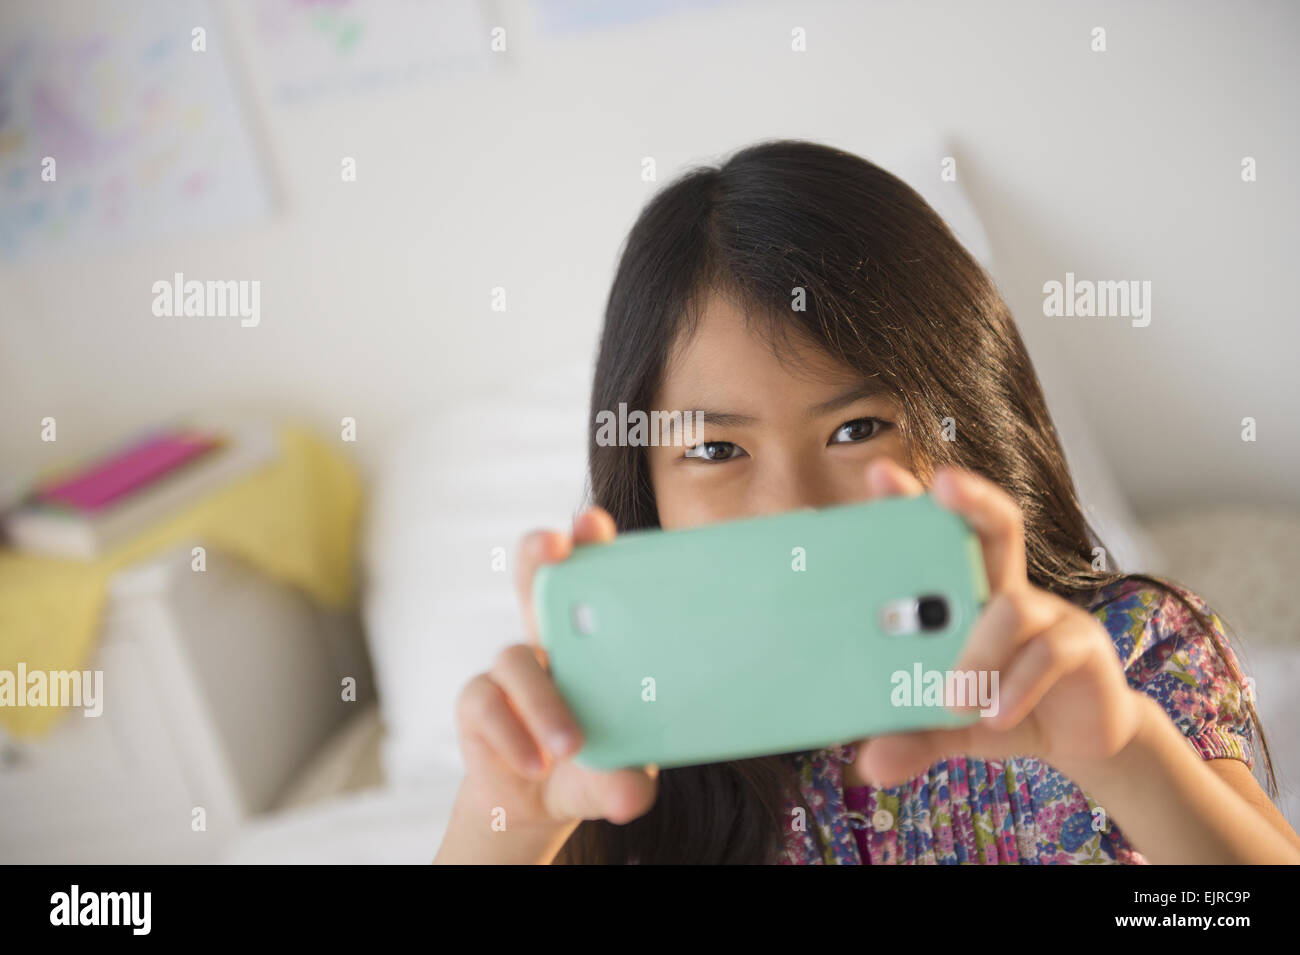 Sorridente ragazza vietnamita tenendo cellulare fotografia Foto Stock